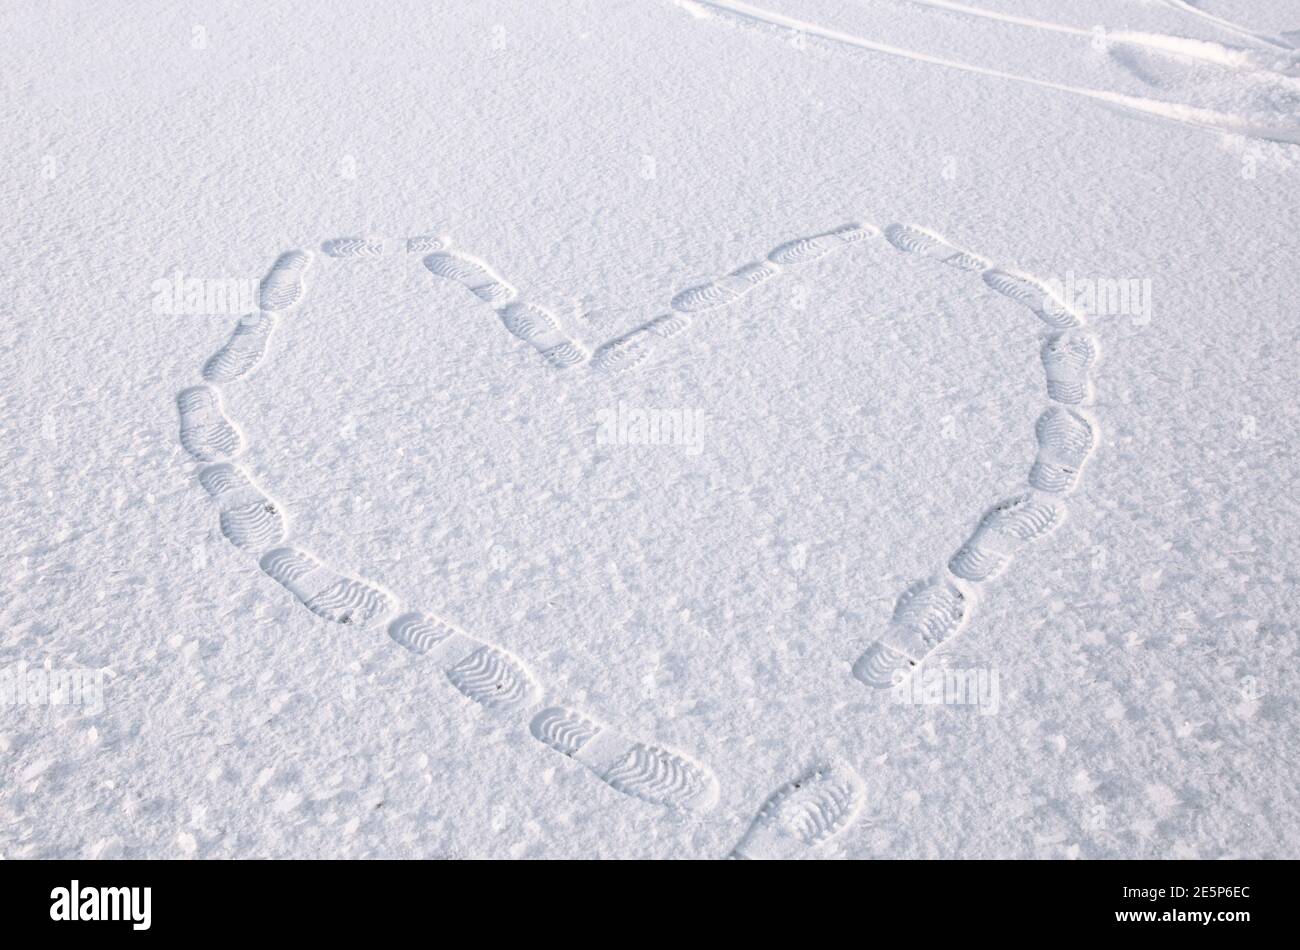 dessin symbolique d'un coeur sur la neige, fait par les marches des pieds. Empreintes de pas dans la neige. Concept de la Saint-Valentin, symbole d'amour. Marche entertai Banque D'Images